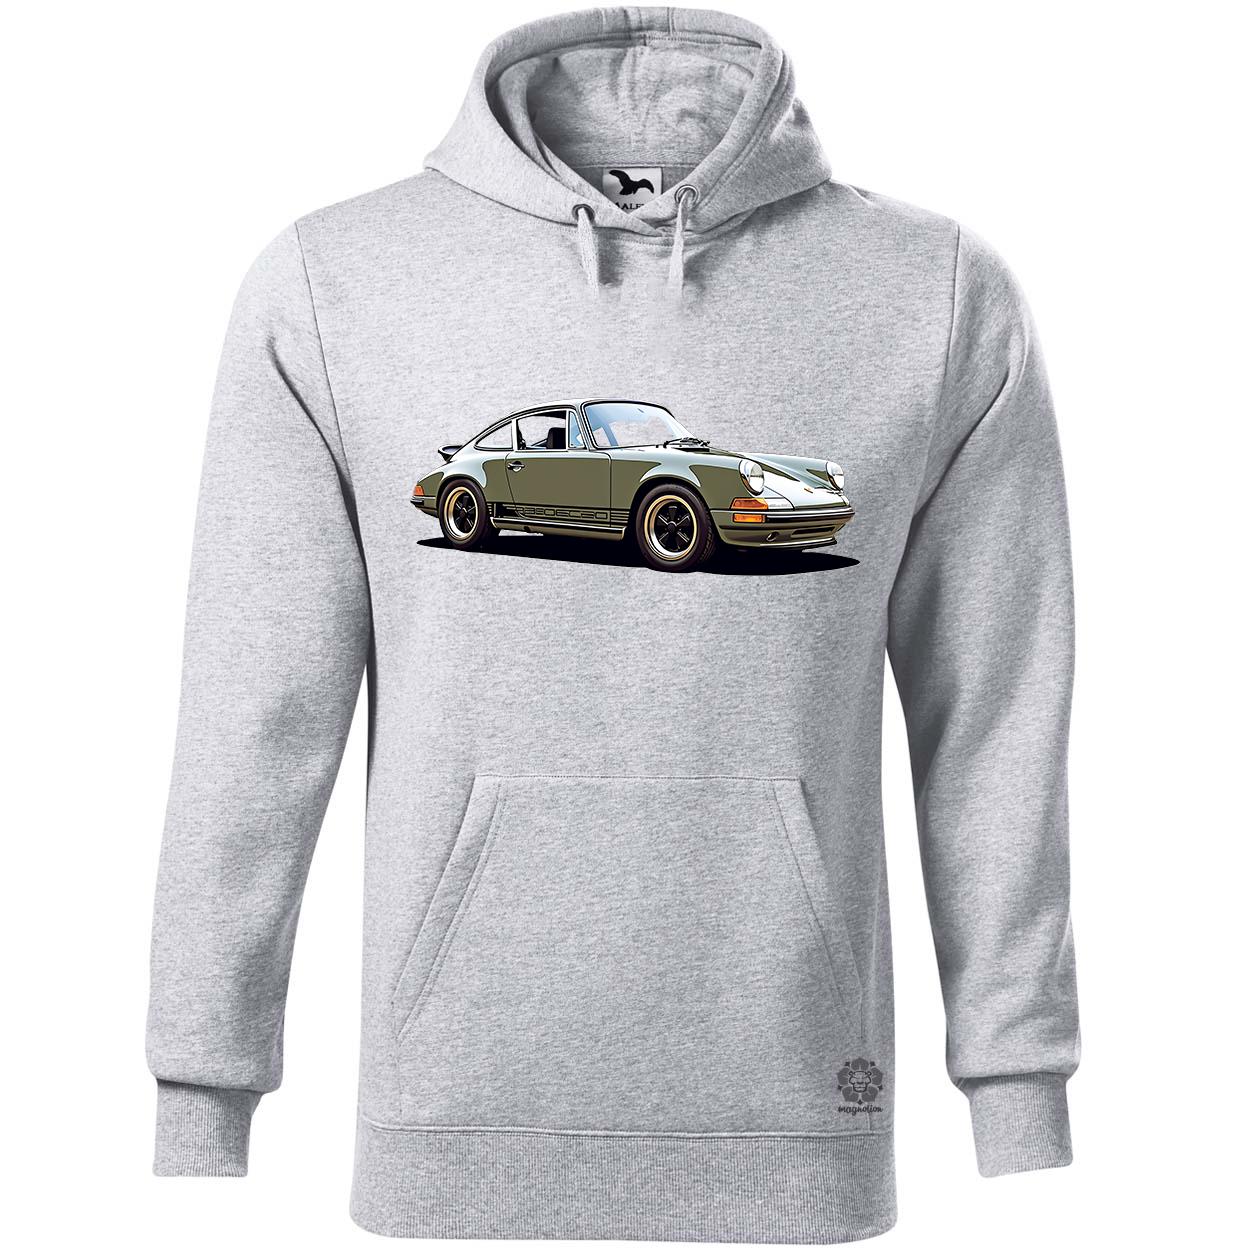 Porsche 911 rajz v2